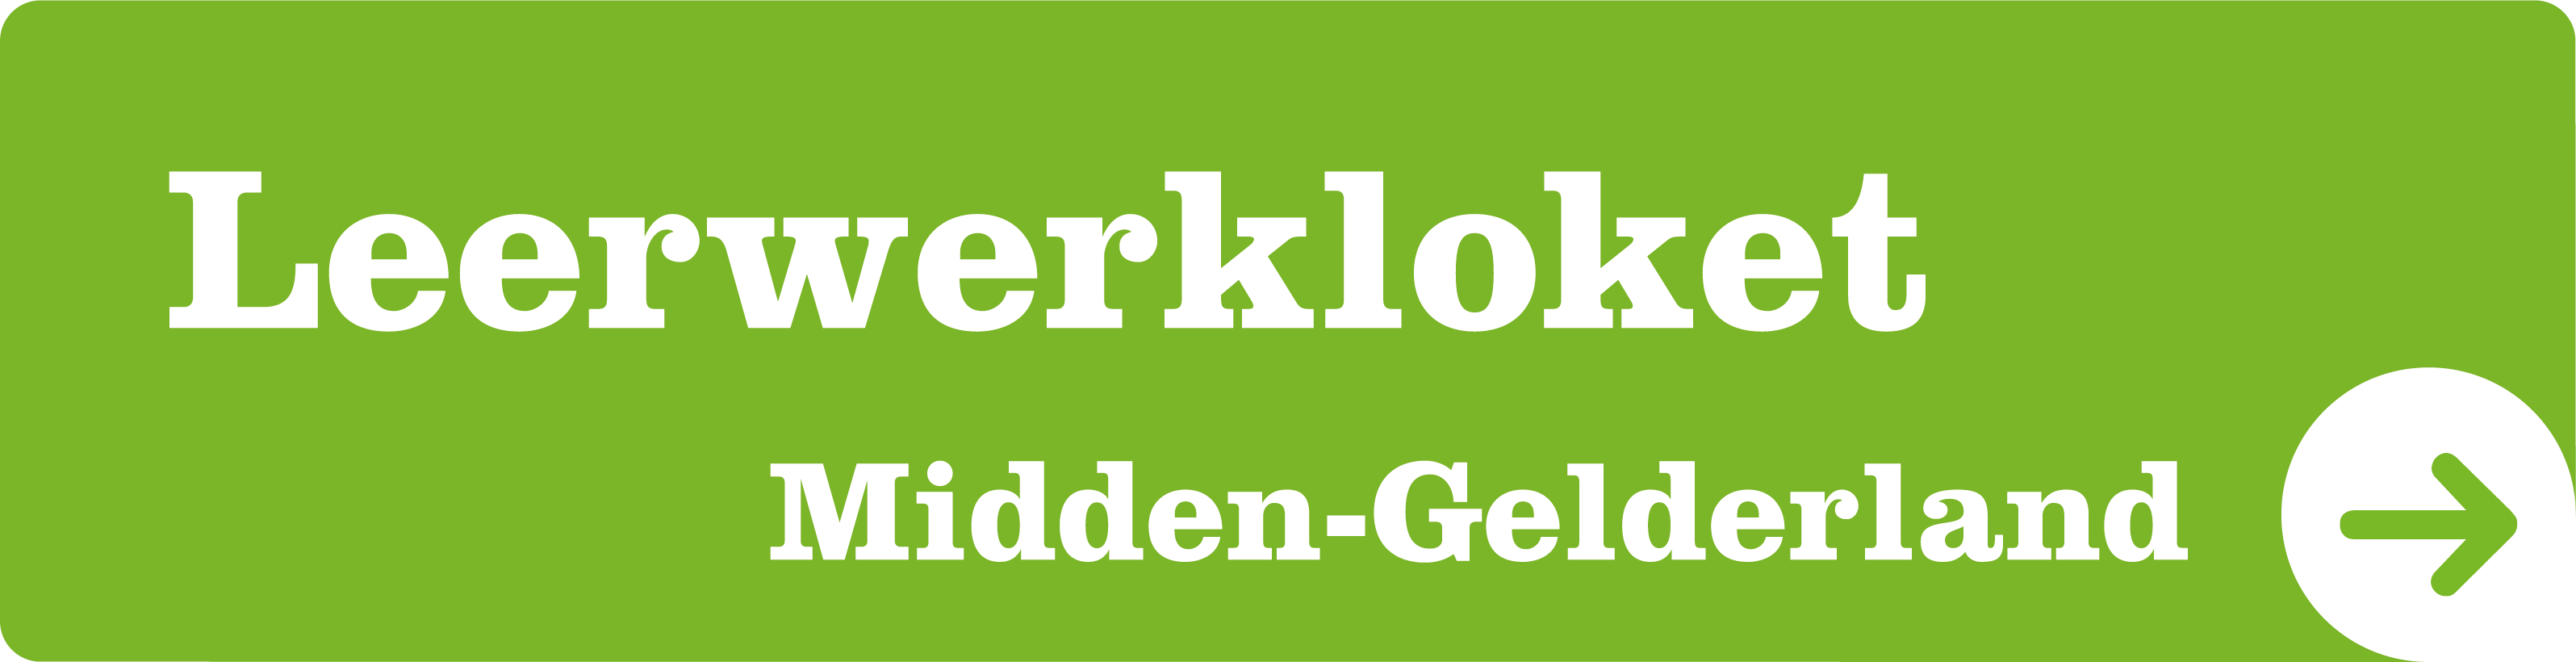 Leerwerkloket Midden-Gelderland